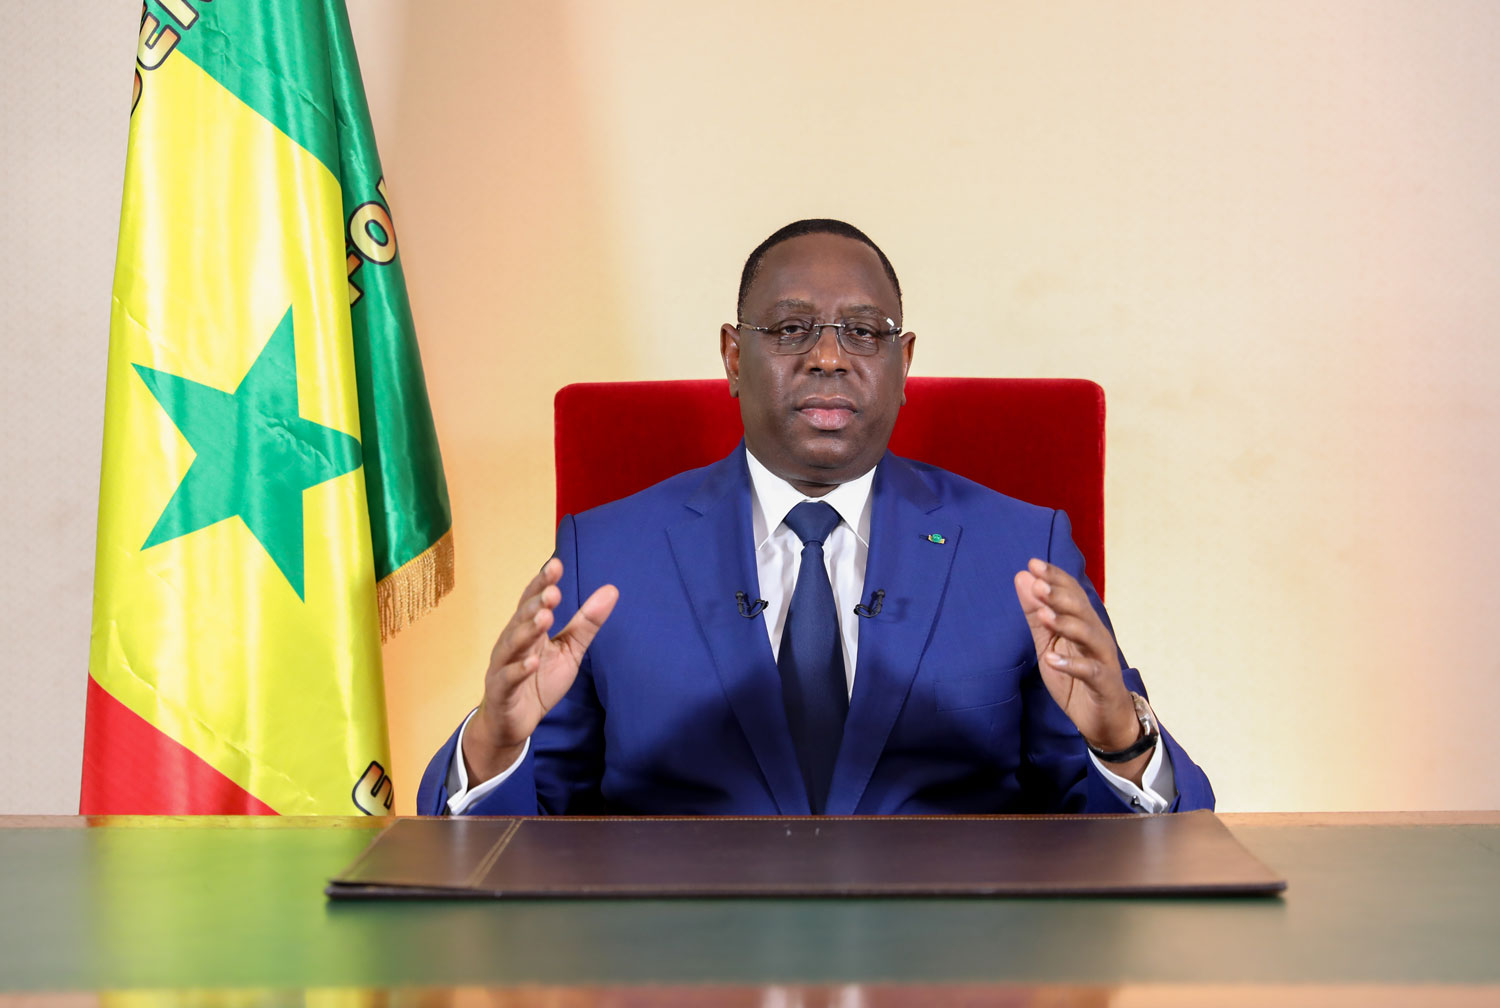 COVID-19 : Le président Macky Sall déclare l’état d’urgence au Sénégal. [🔴LIVE - EDITION SPECIALE] Covid-19 : La Situation du lundi 23 Mars 2020 Sénégal : 12 nouveaux cas testés positifs au